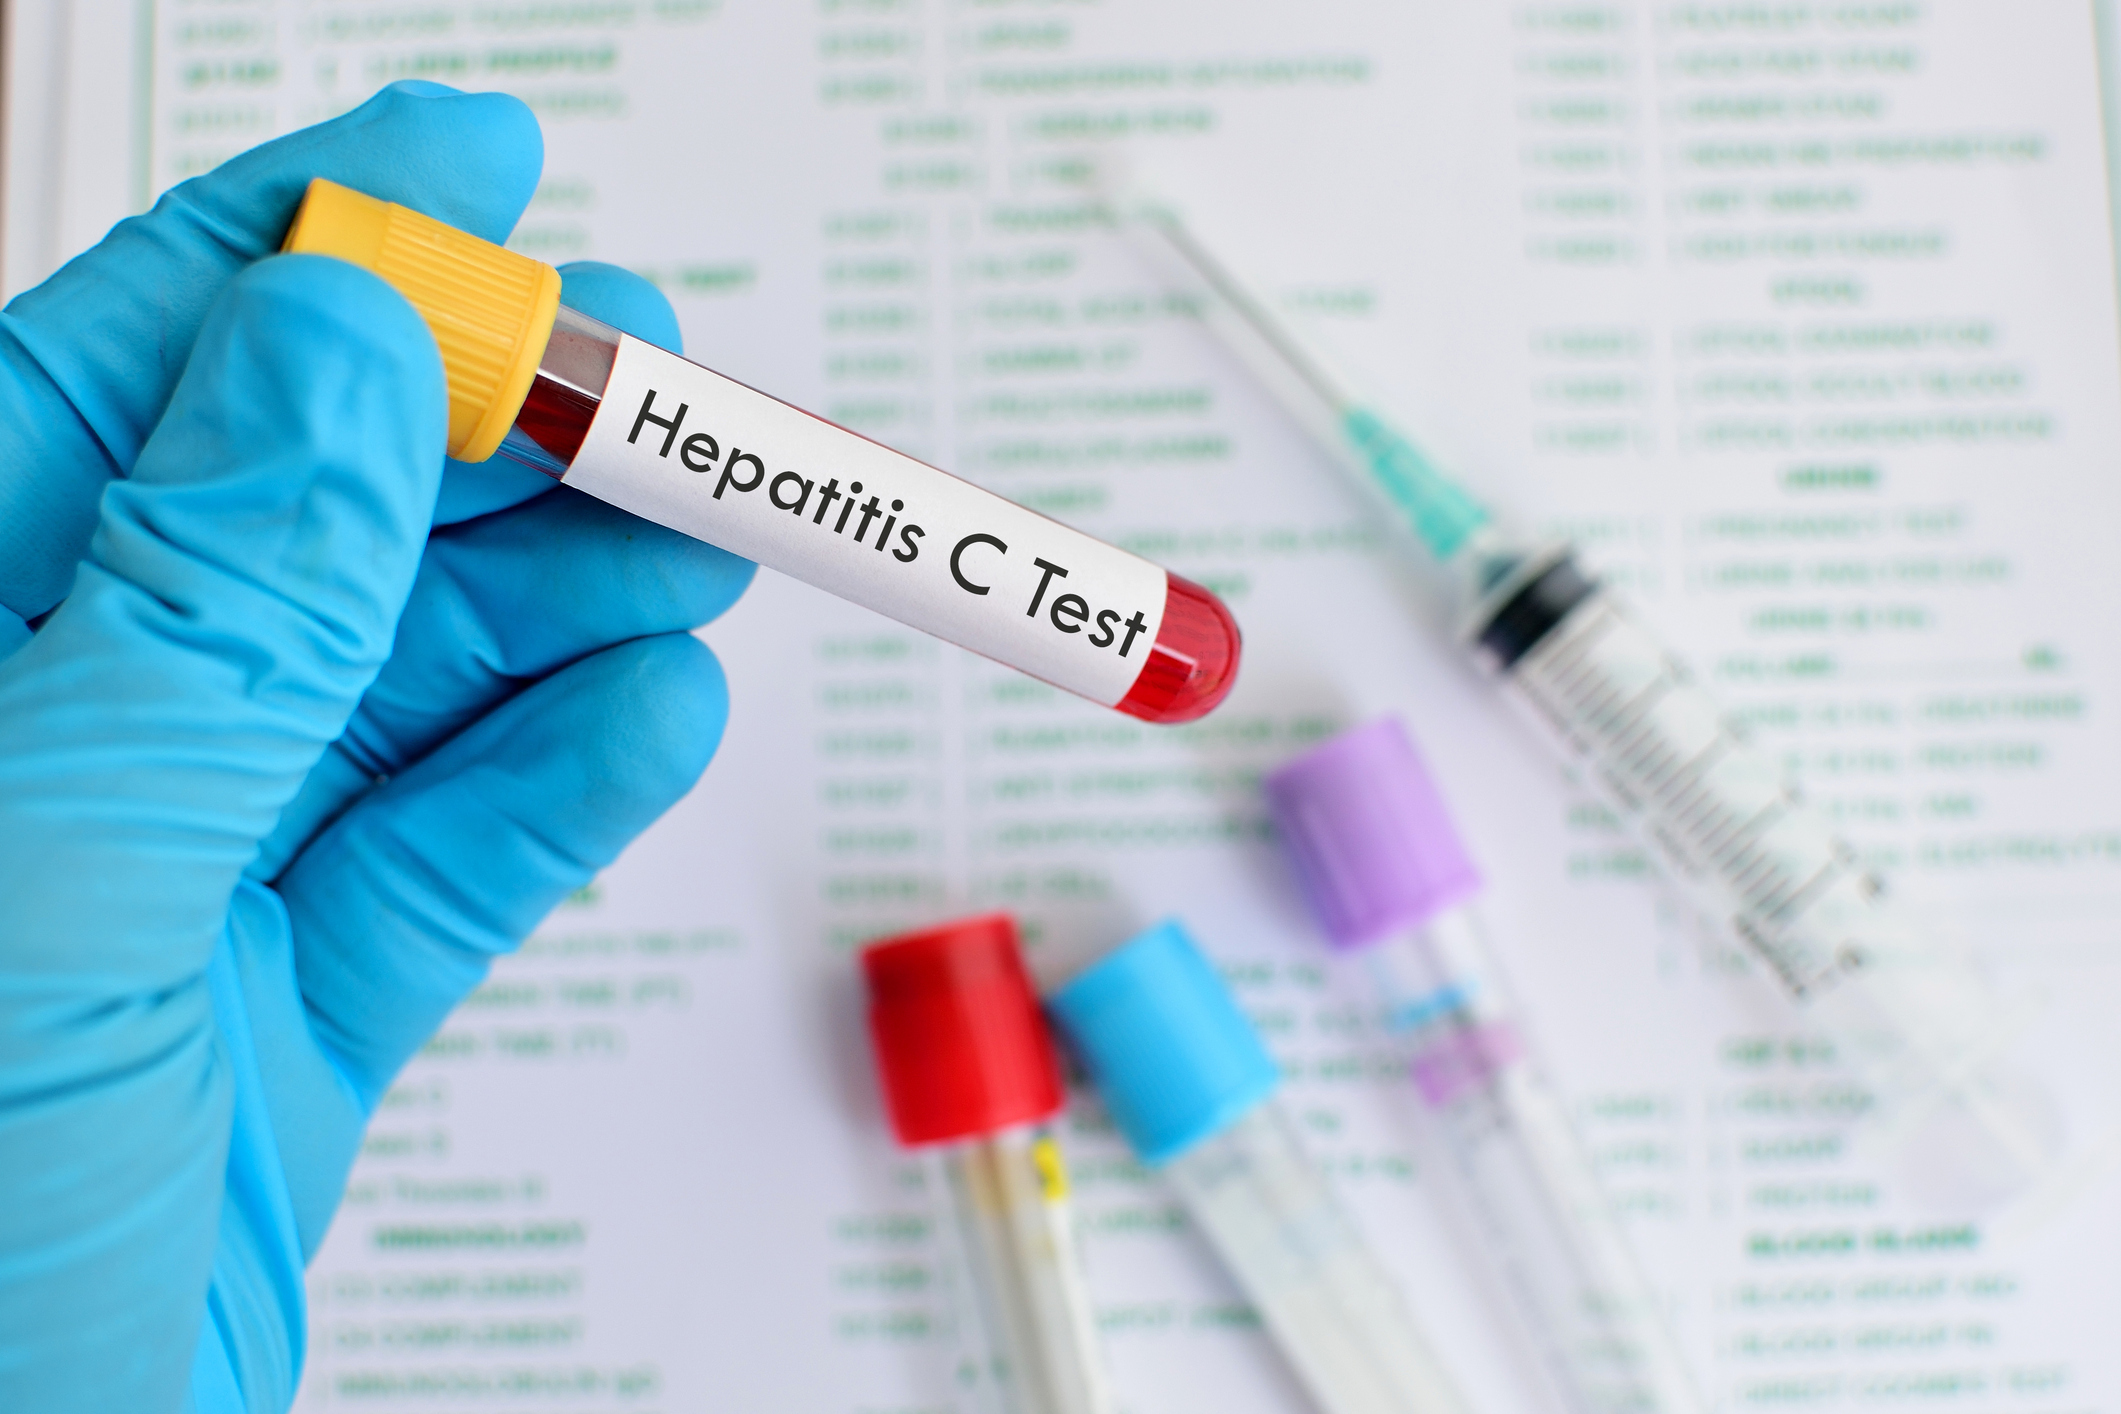  Solo 12 países en el mundo se encaminan a eliminar hepatitis C para 2030